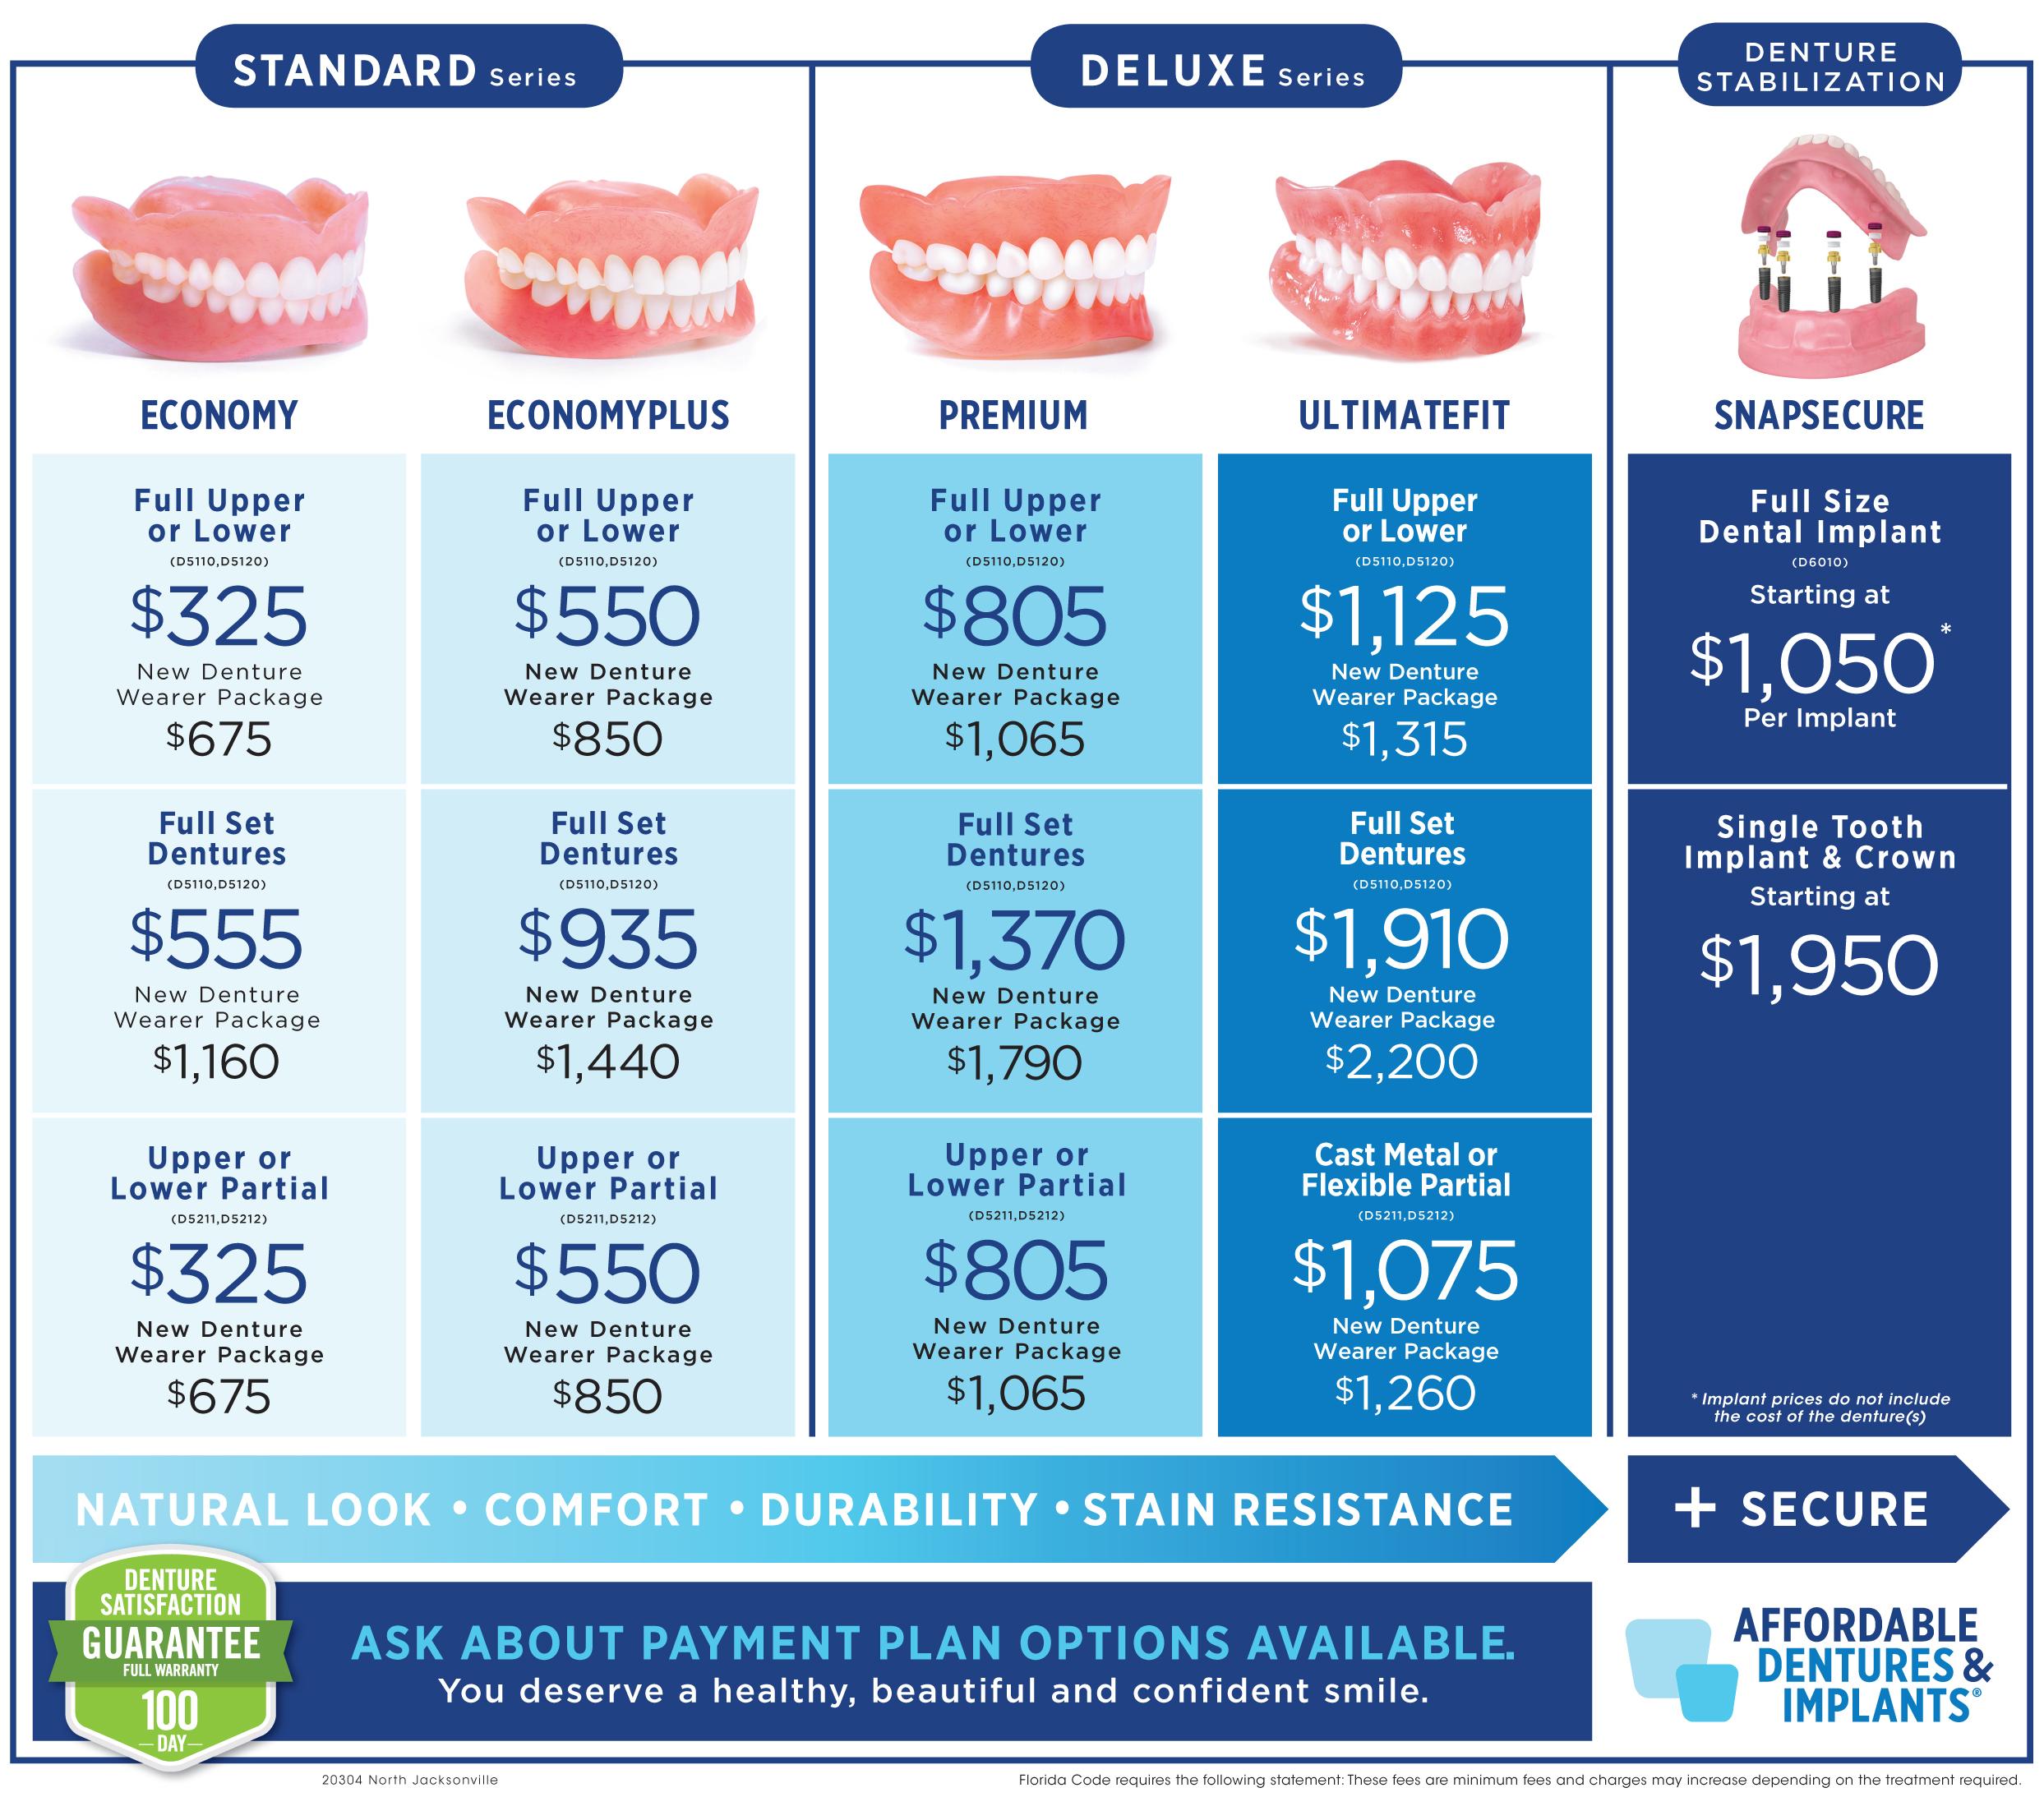 Affordable Dentures & Implants 800 Dunn Ave, Jacksonville, FL 32218